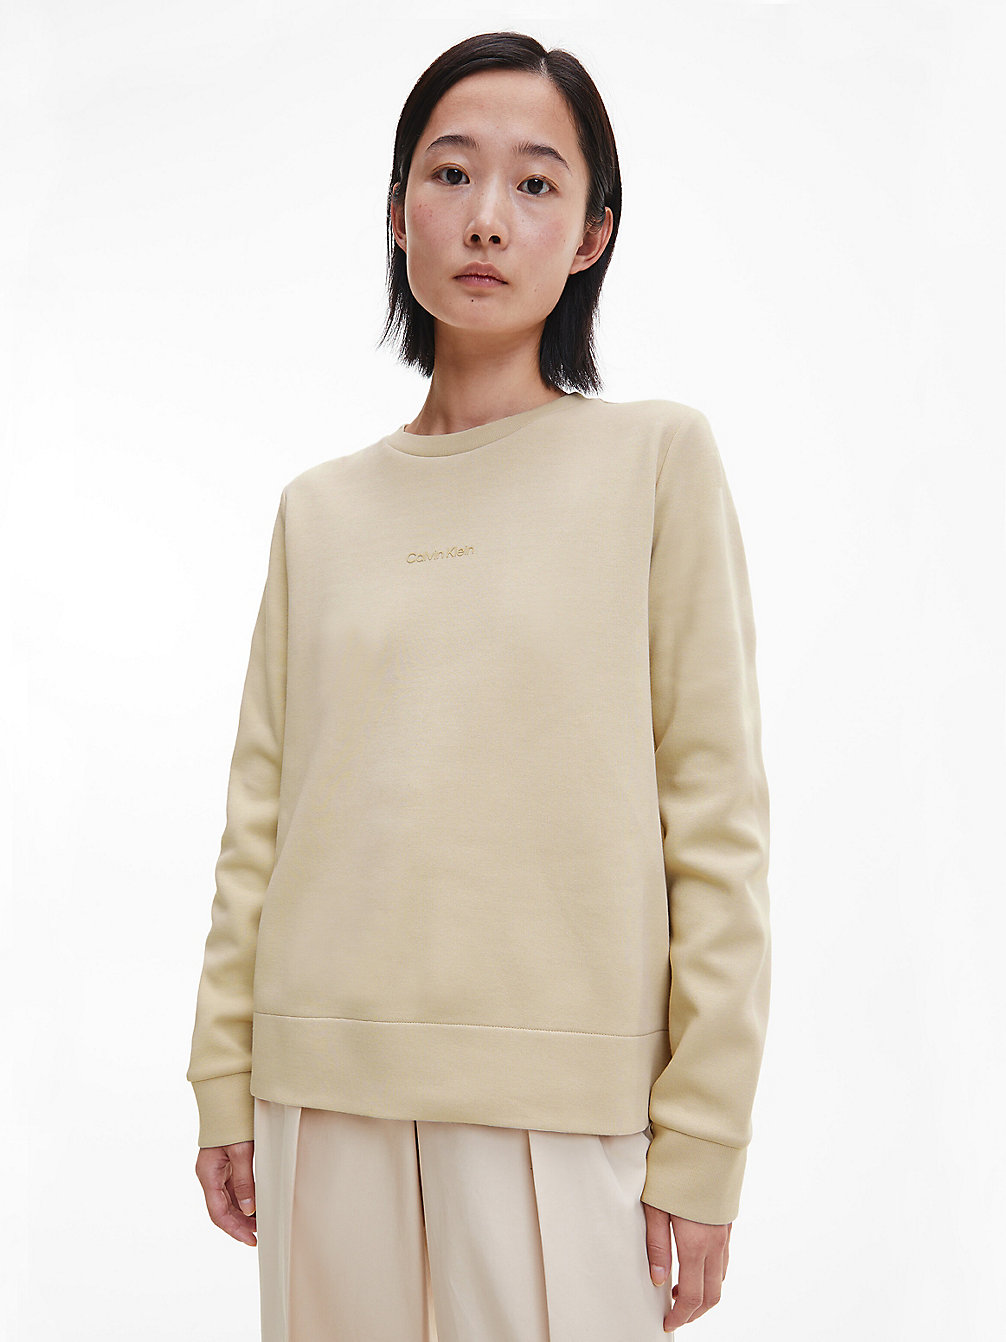 WHITE CLAY > Bluza Z Przetworzonego Poliestru > undefined Kobiety - Calvin Klein